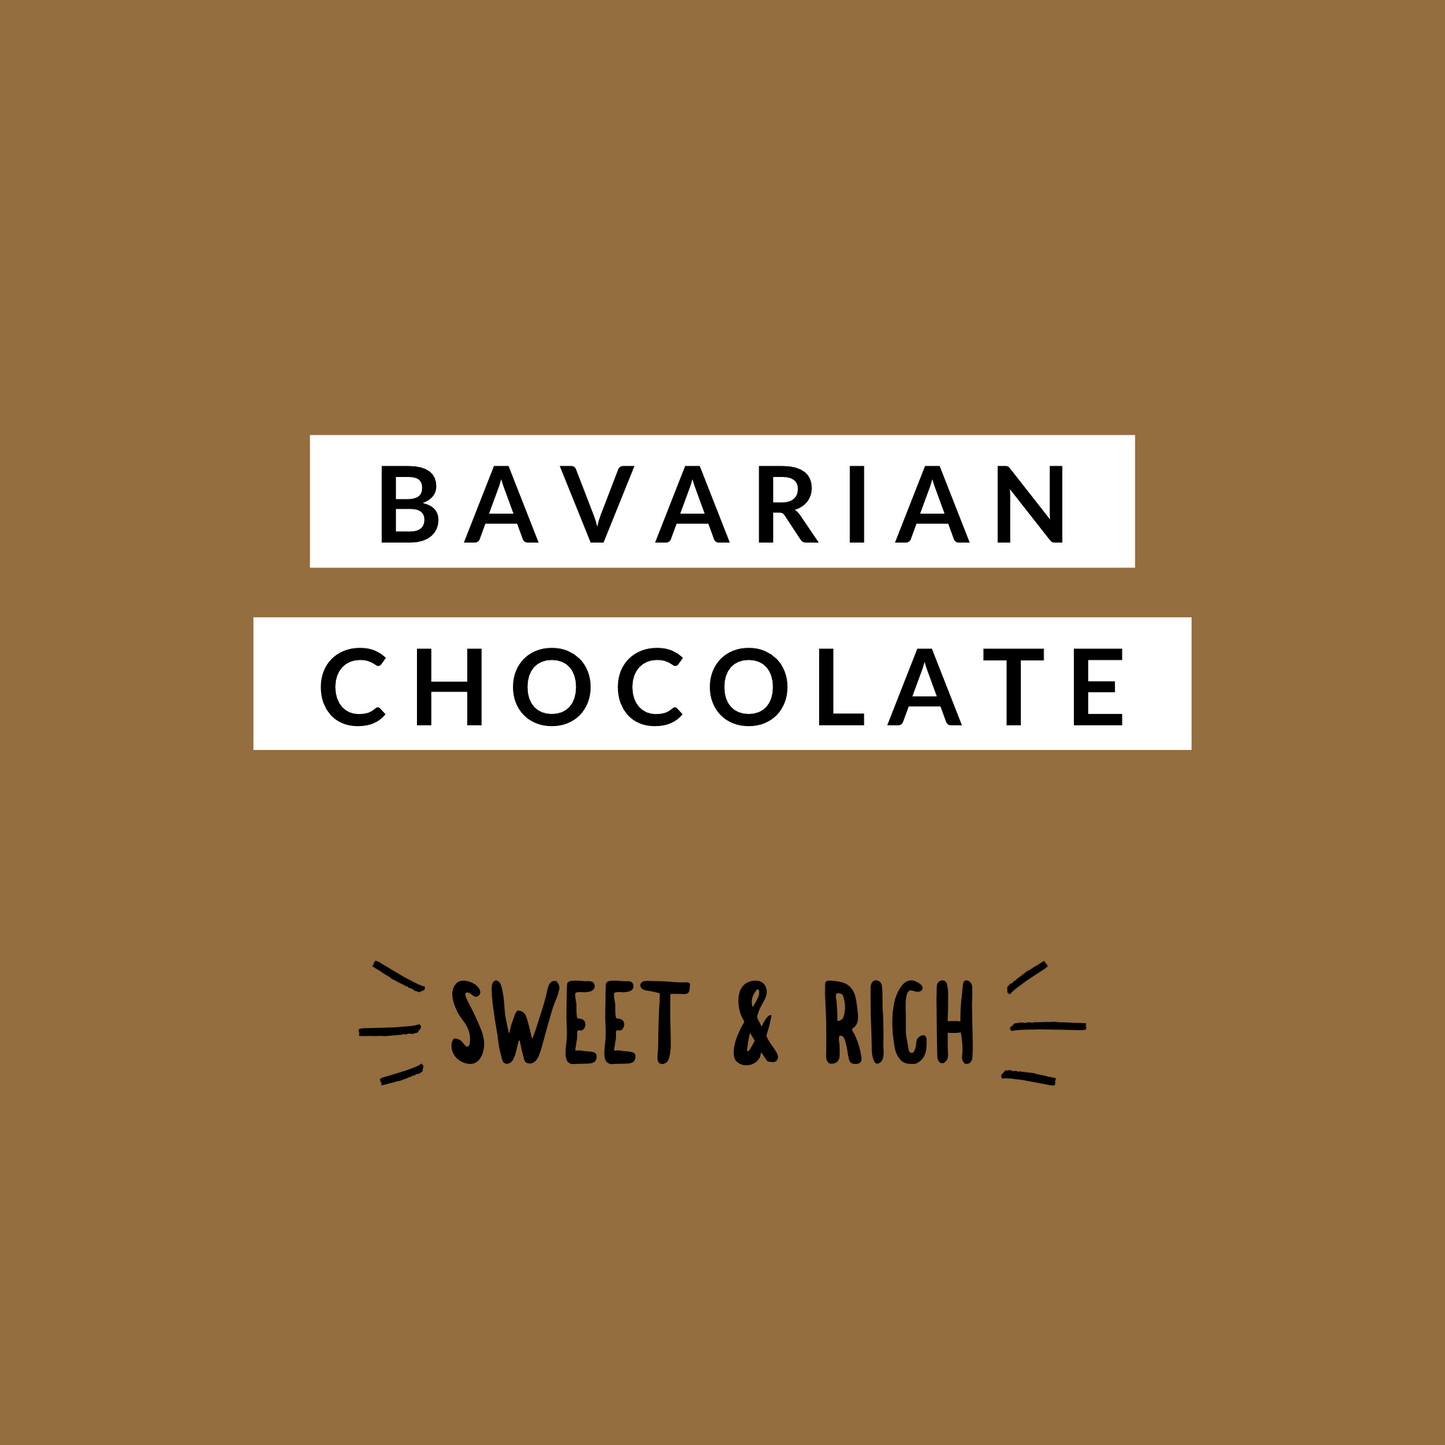 Bavarian Chocolate